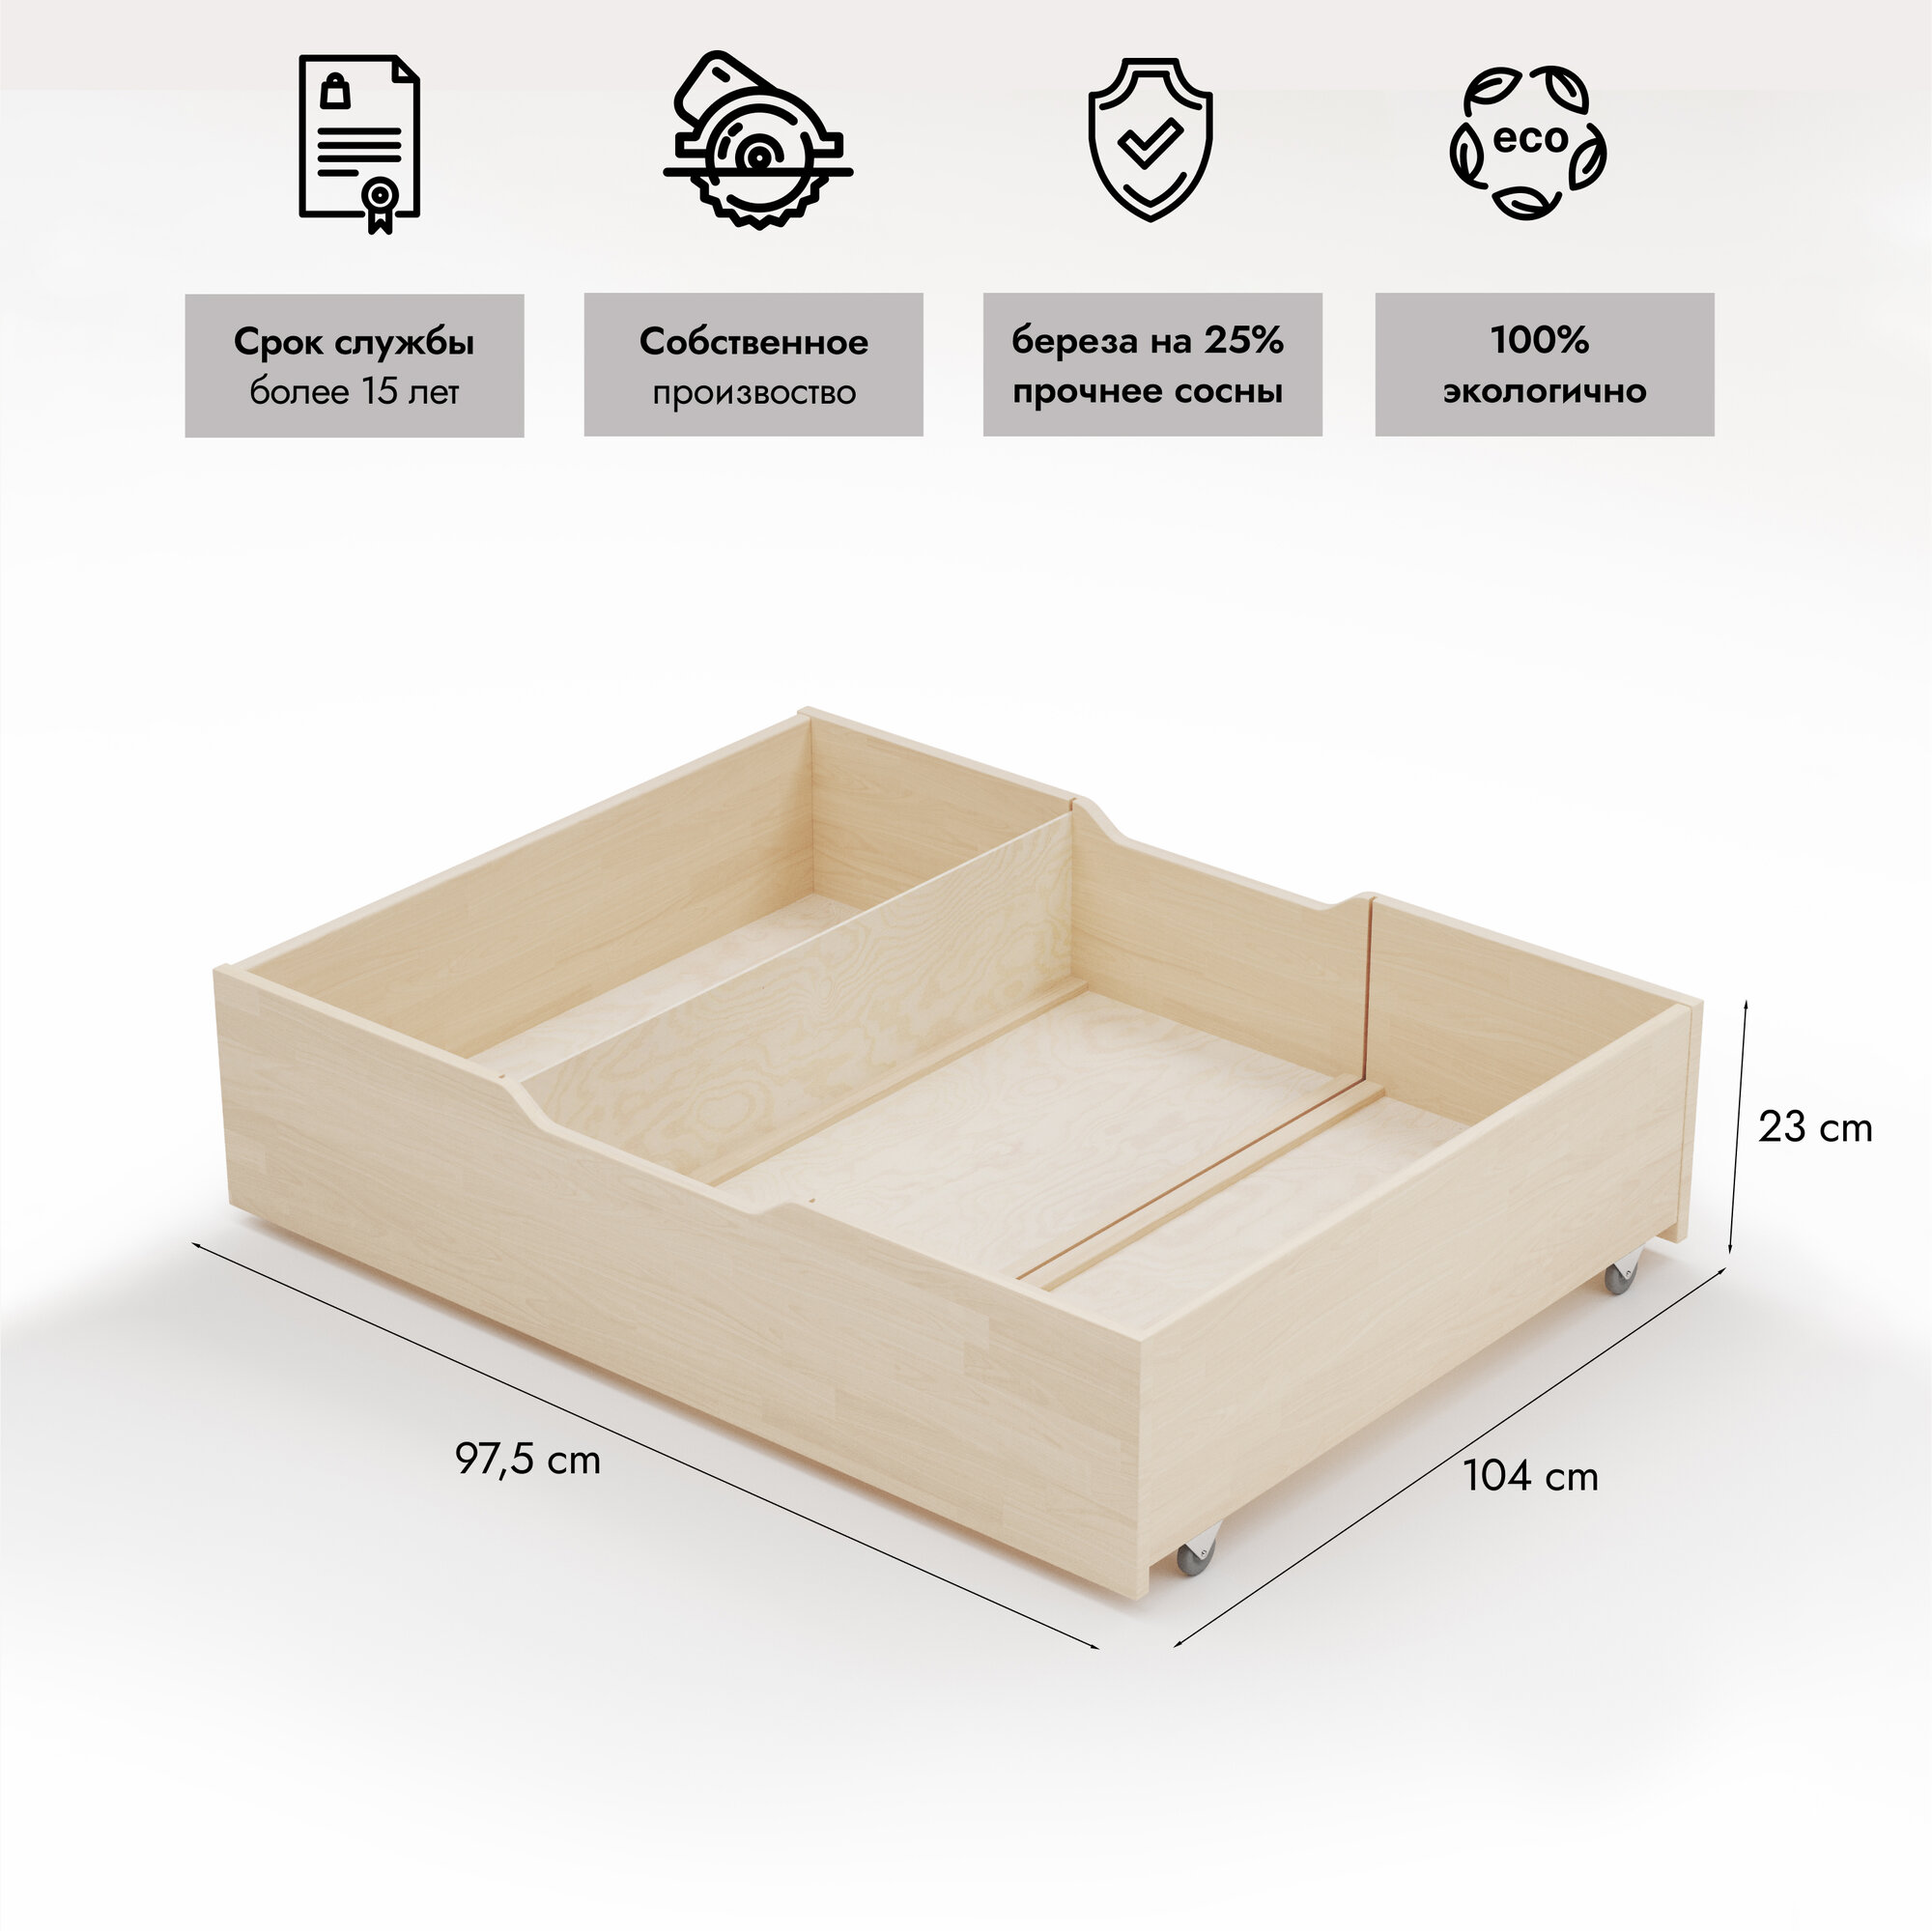 Ящик для кровати 100х200 см, Hansales, выкатной, подкроватный, 97,5х104 см, 1 шт.